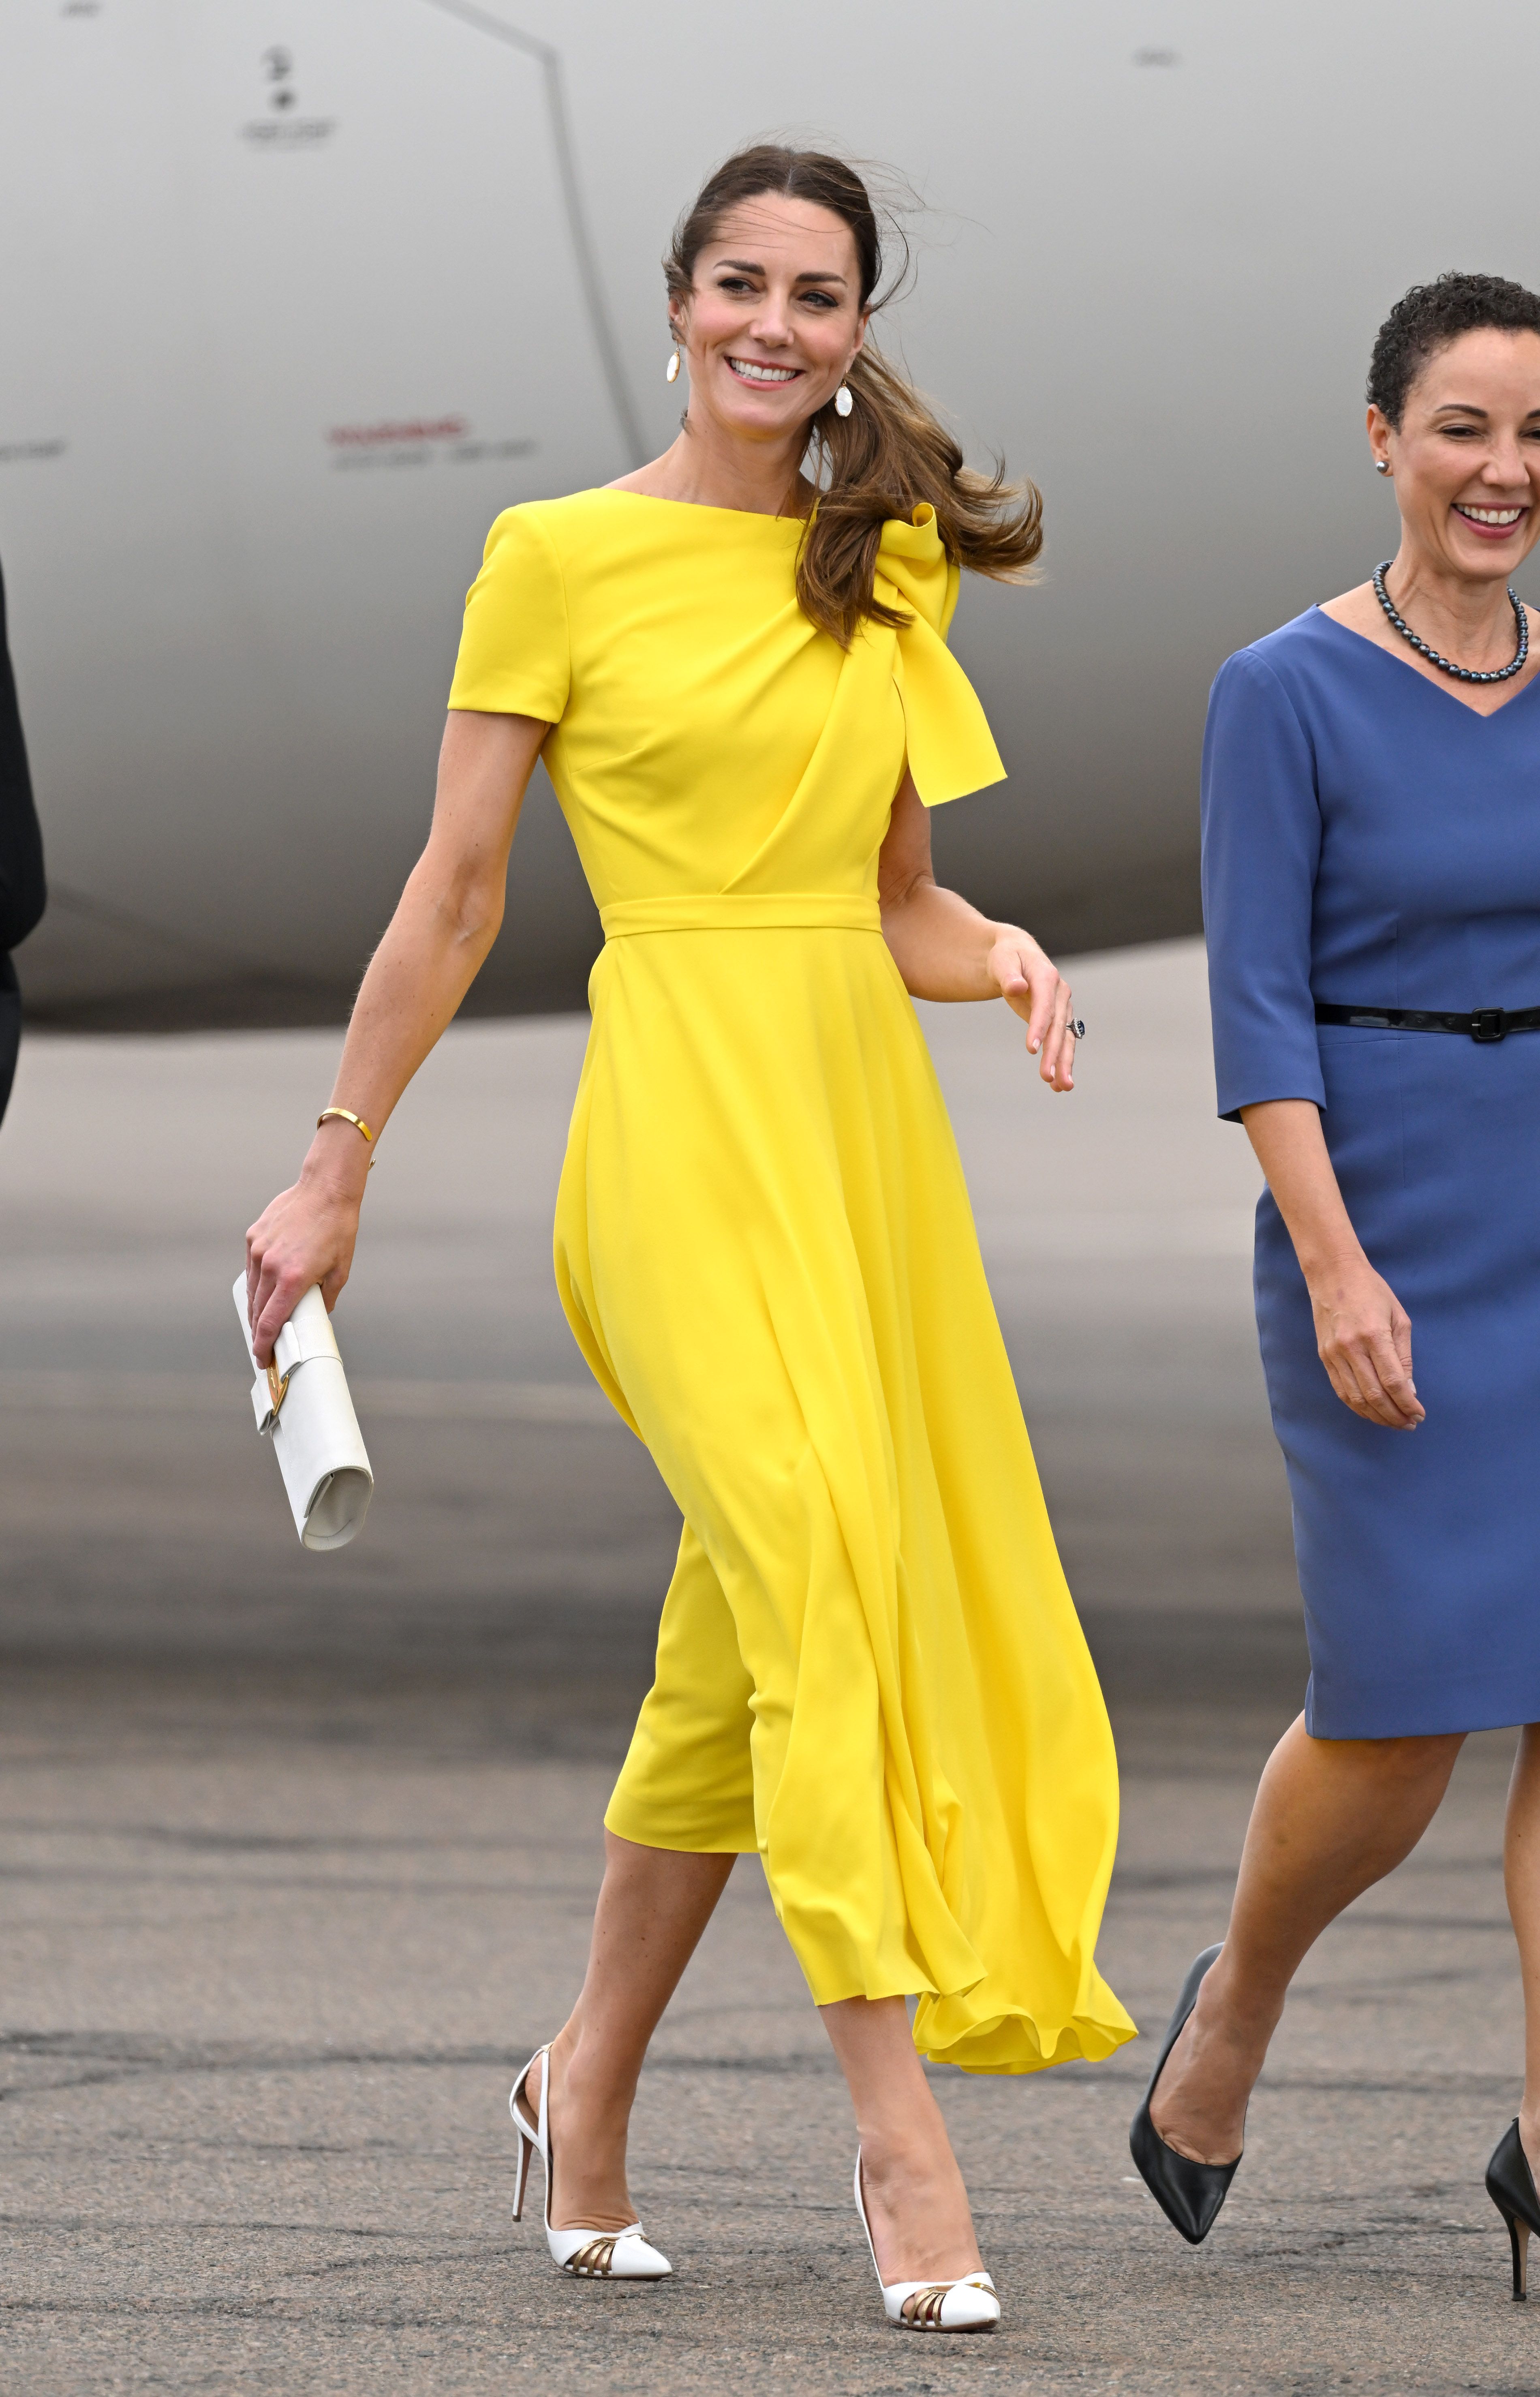 Karen Millen Forever Pleated Dress in Ochre Yellow - Kate